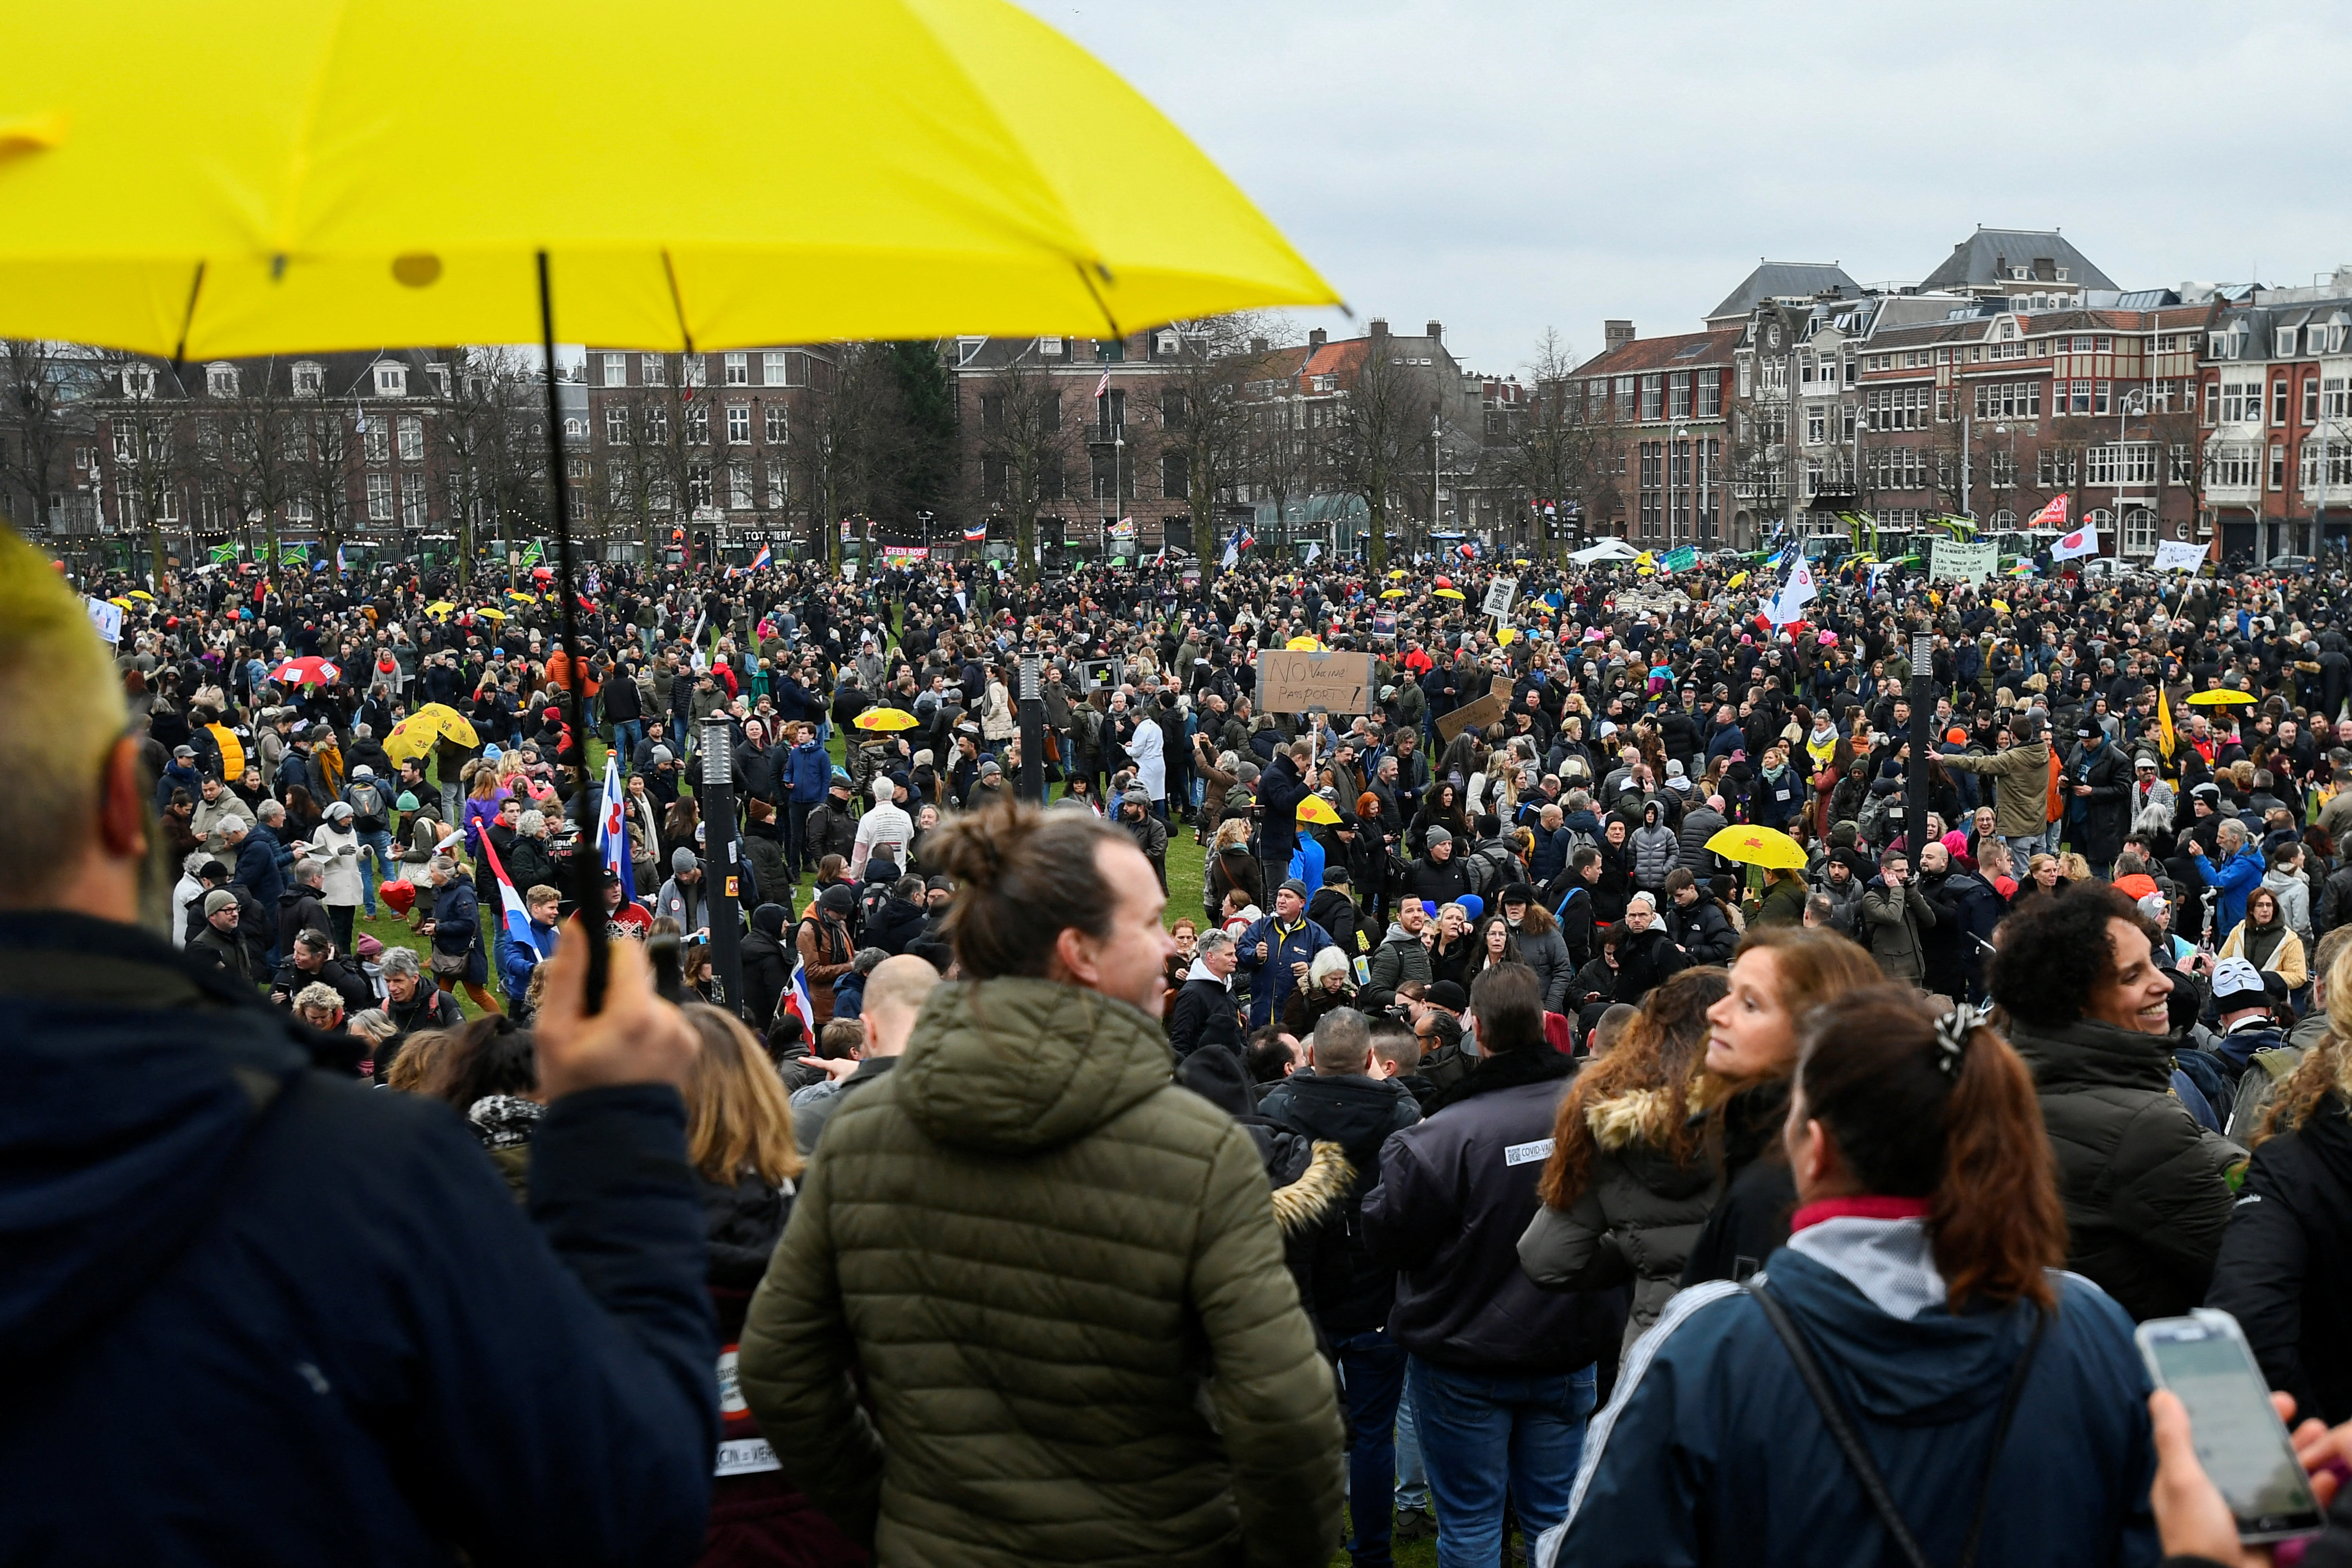 Los manifestantes participan en una protesta contra las restricciones impuestas por el gobierno holandés para contener la propagación de la enfermedad coronavirus (COVID-19), en Ámsterdam, Países Bajos, el 16 de enero de 2022. REUTERS/Piroschka van de Wouw